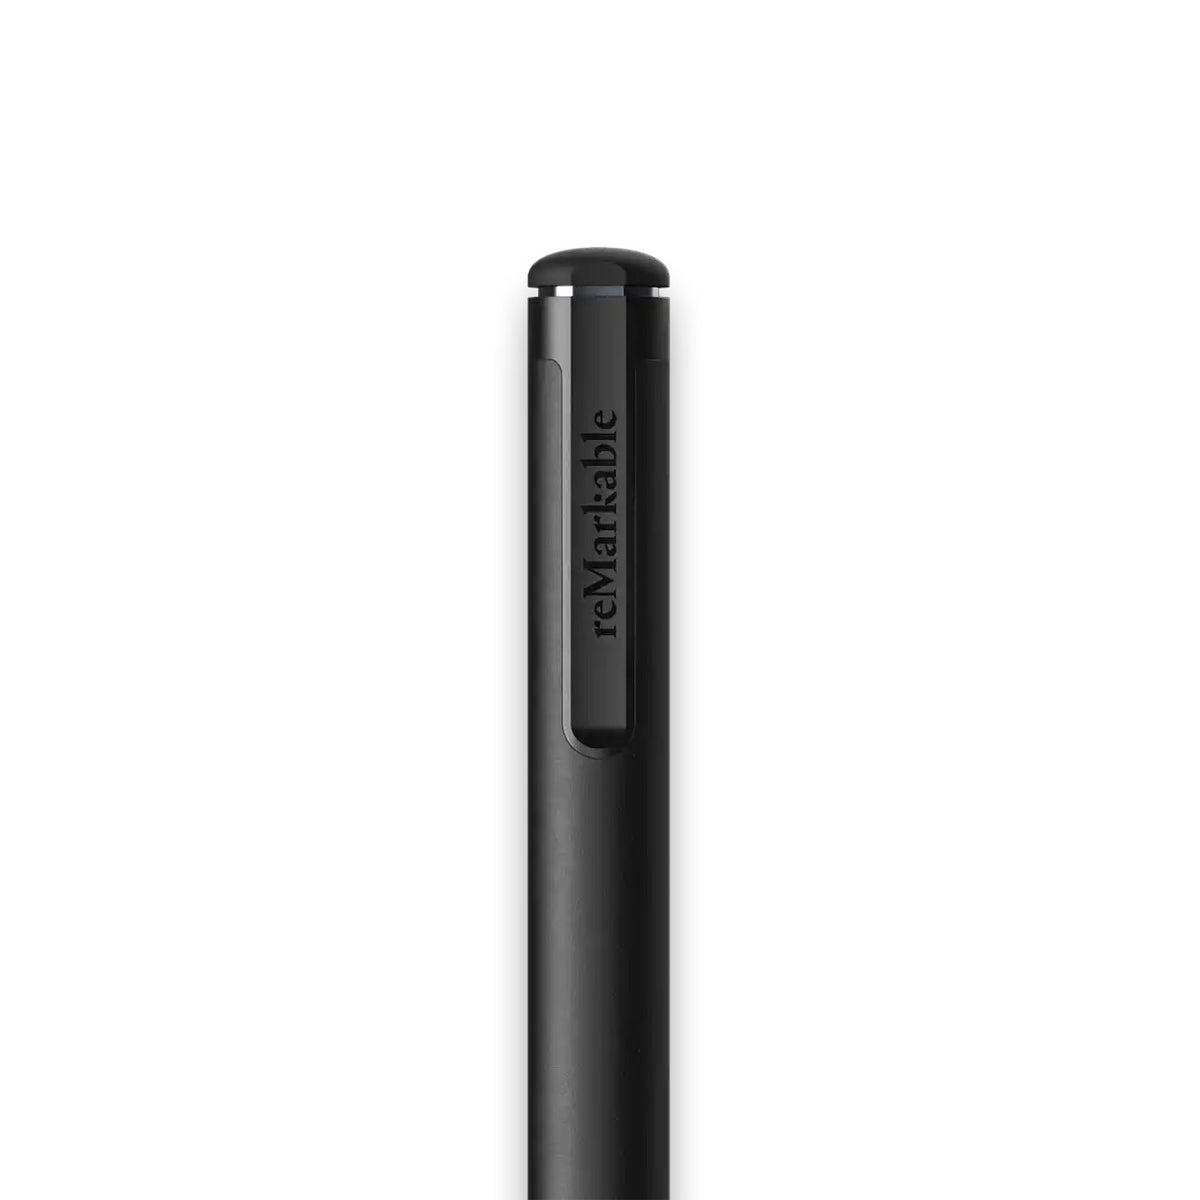 Remarkable 2 Marker Plus Pen, eReader Accessory